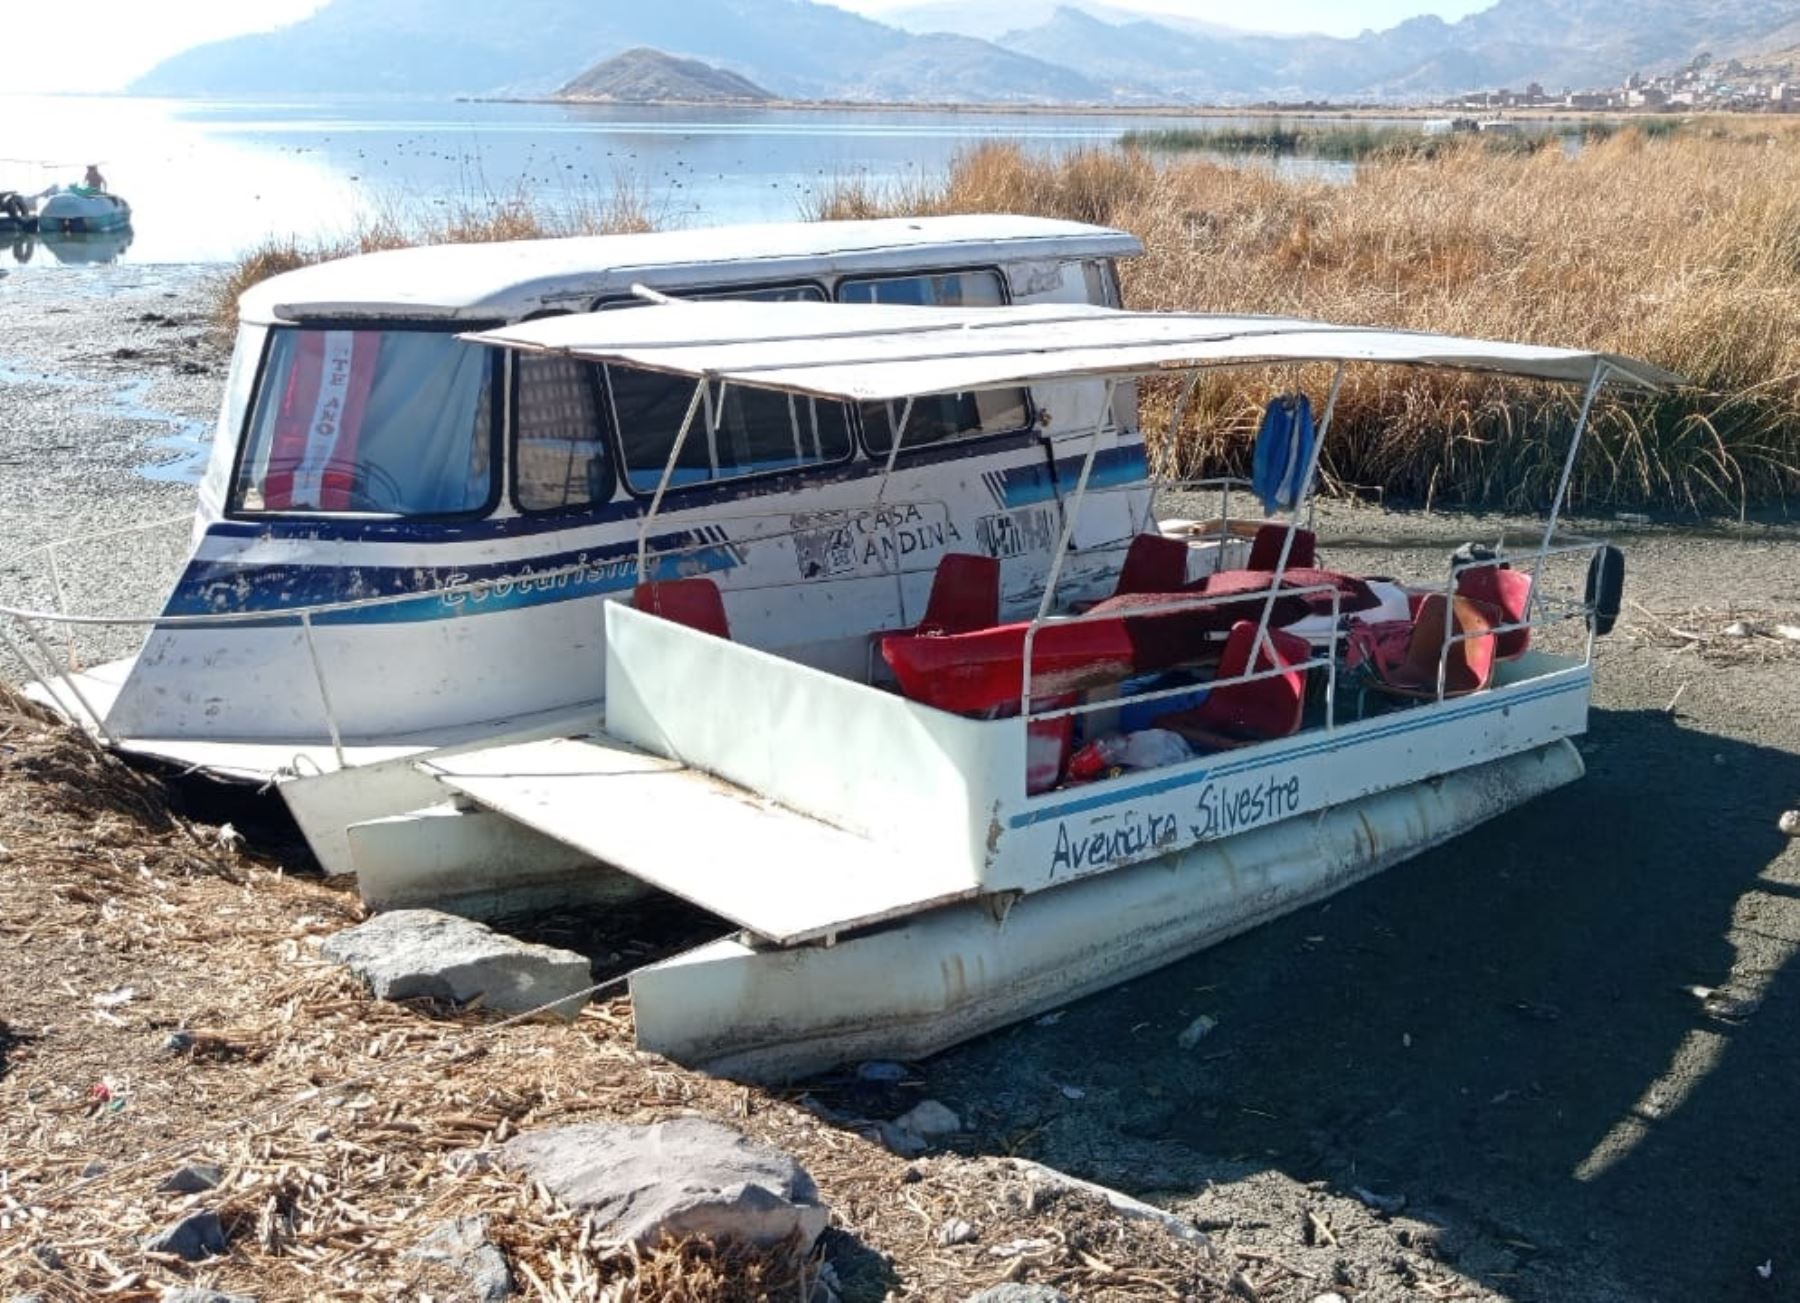 Diversas embarcaciones lacustres quedaron en tierra debido a la disminución del nivel del agua del lago Titicaca a causa del déficit hídrico que afecta a Puno. Foto: Alberto Alejo